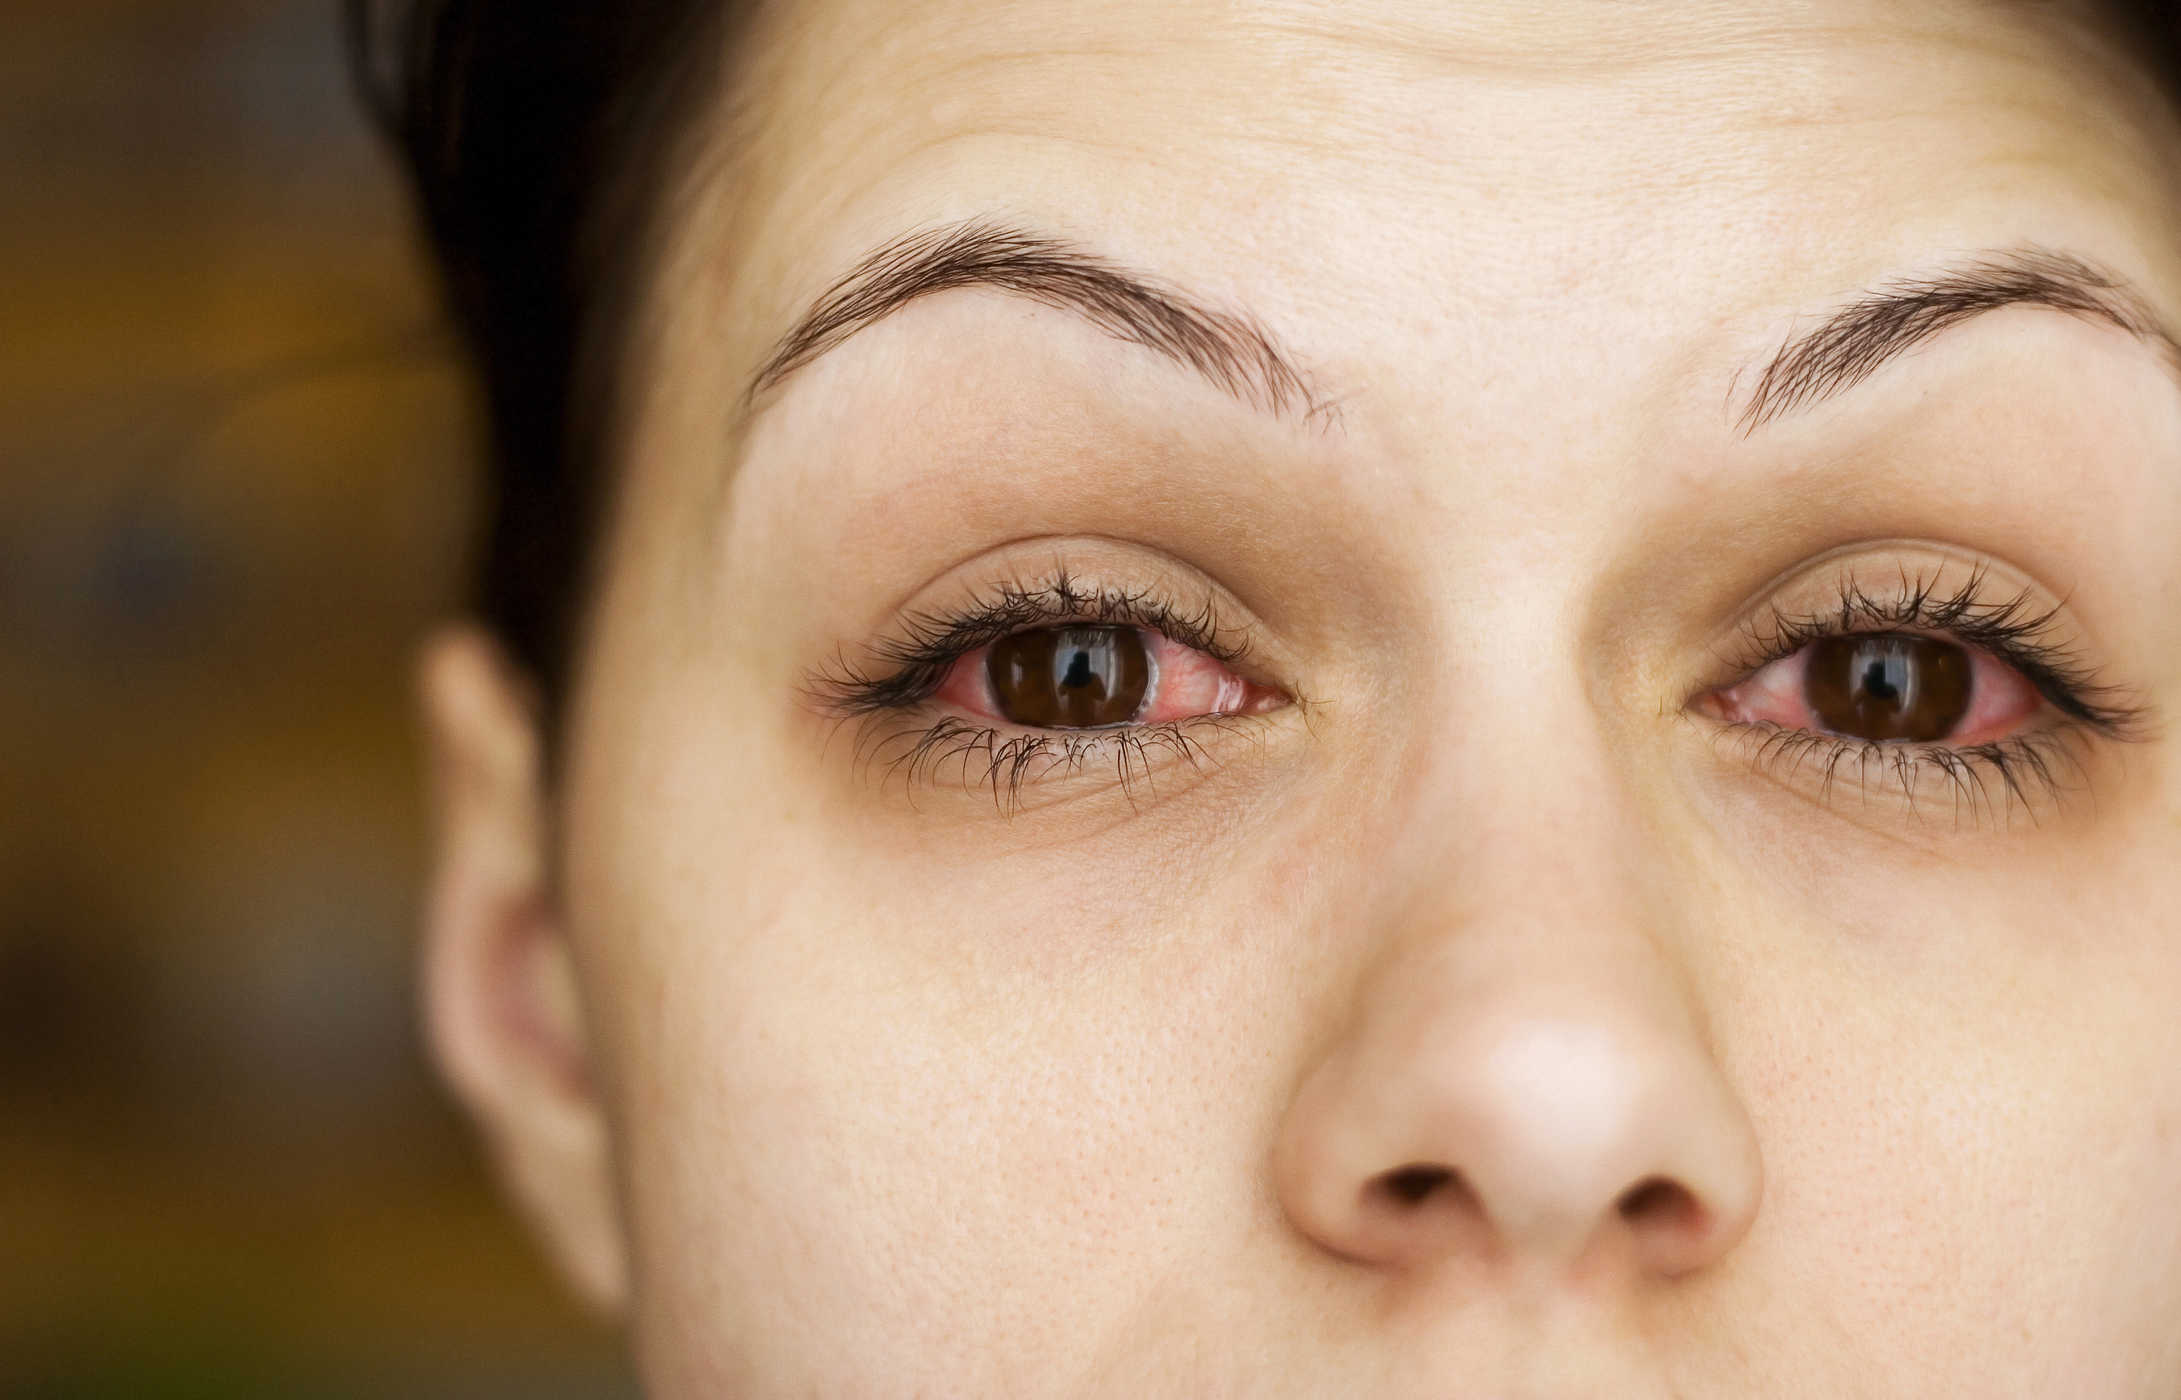 Reconnaître les infections oculaires dues à l'utilisation de lentilles cornéennes